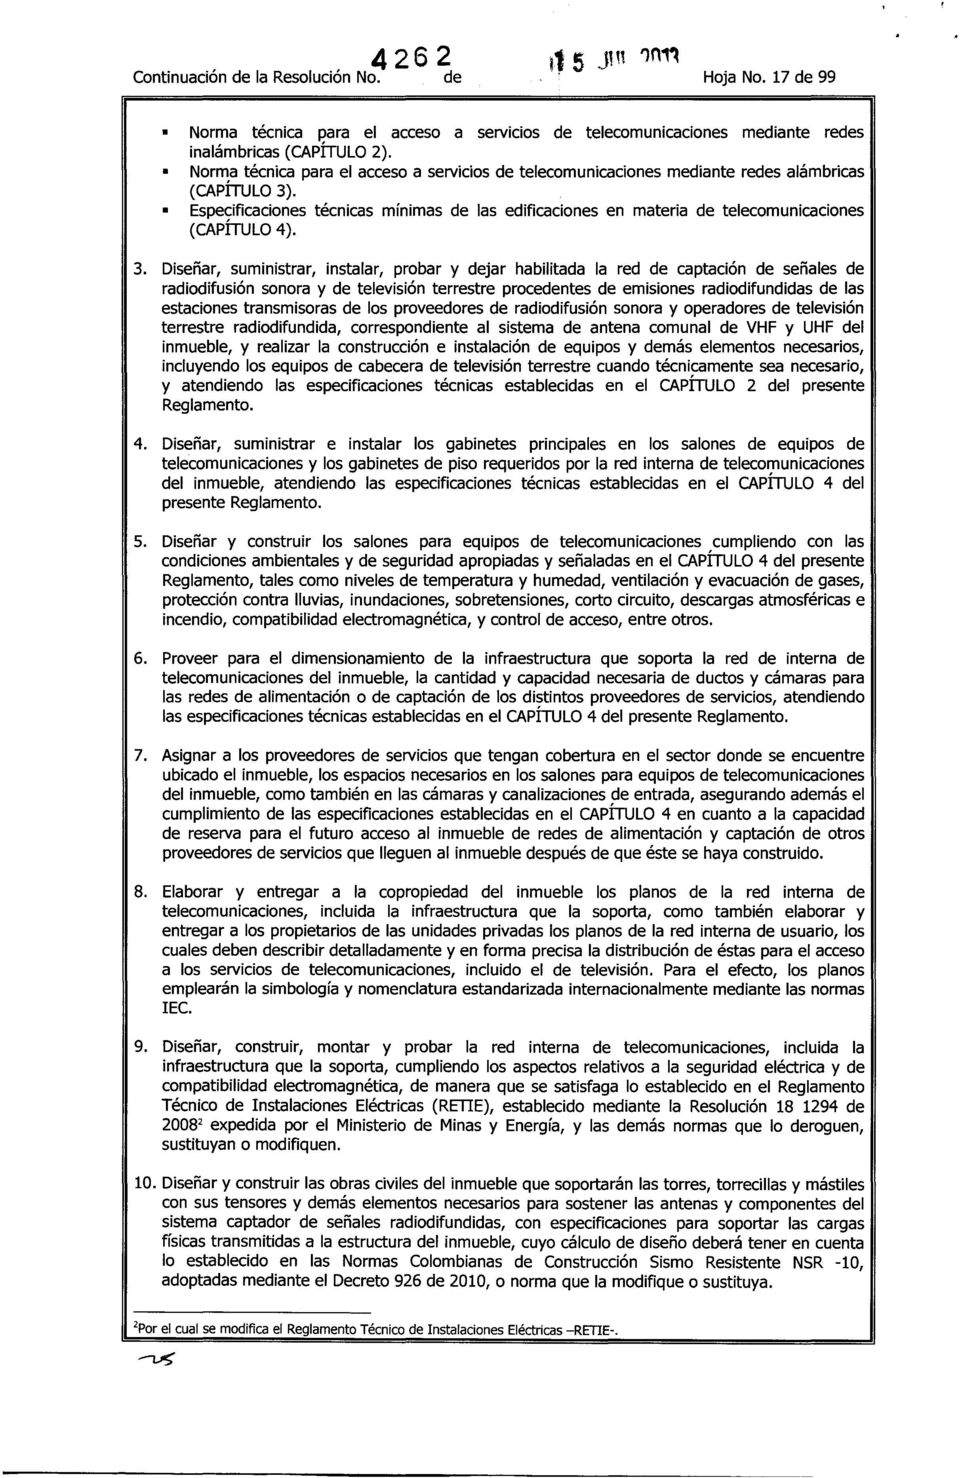 Especificaciones técnicas mínimas de las edificaciones en materia de telecomunicaciones (CAPÍTULO 4). 3.